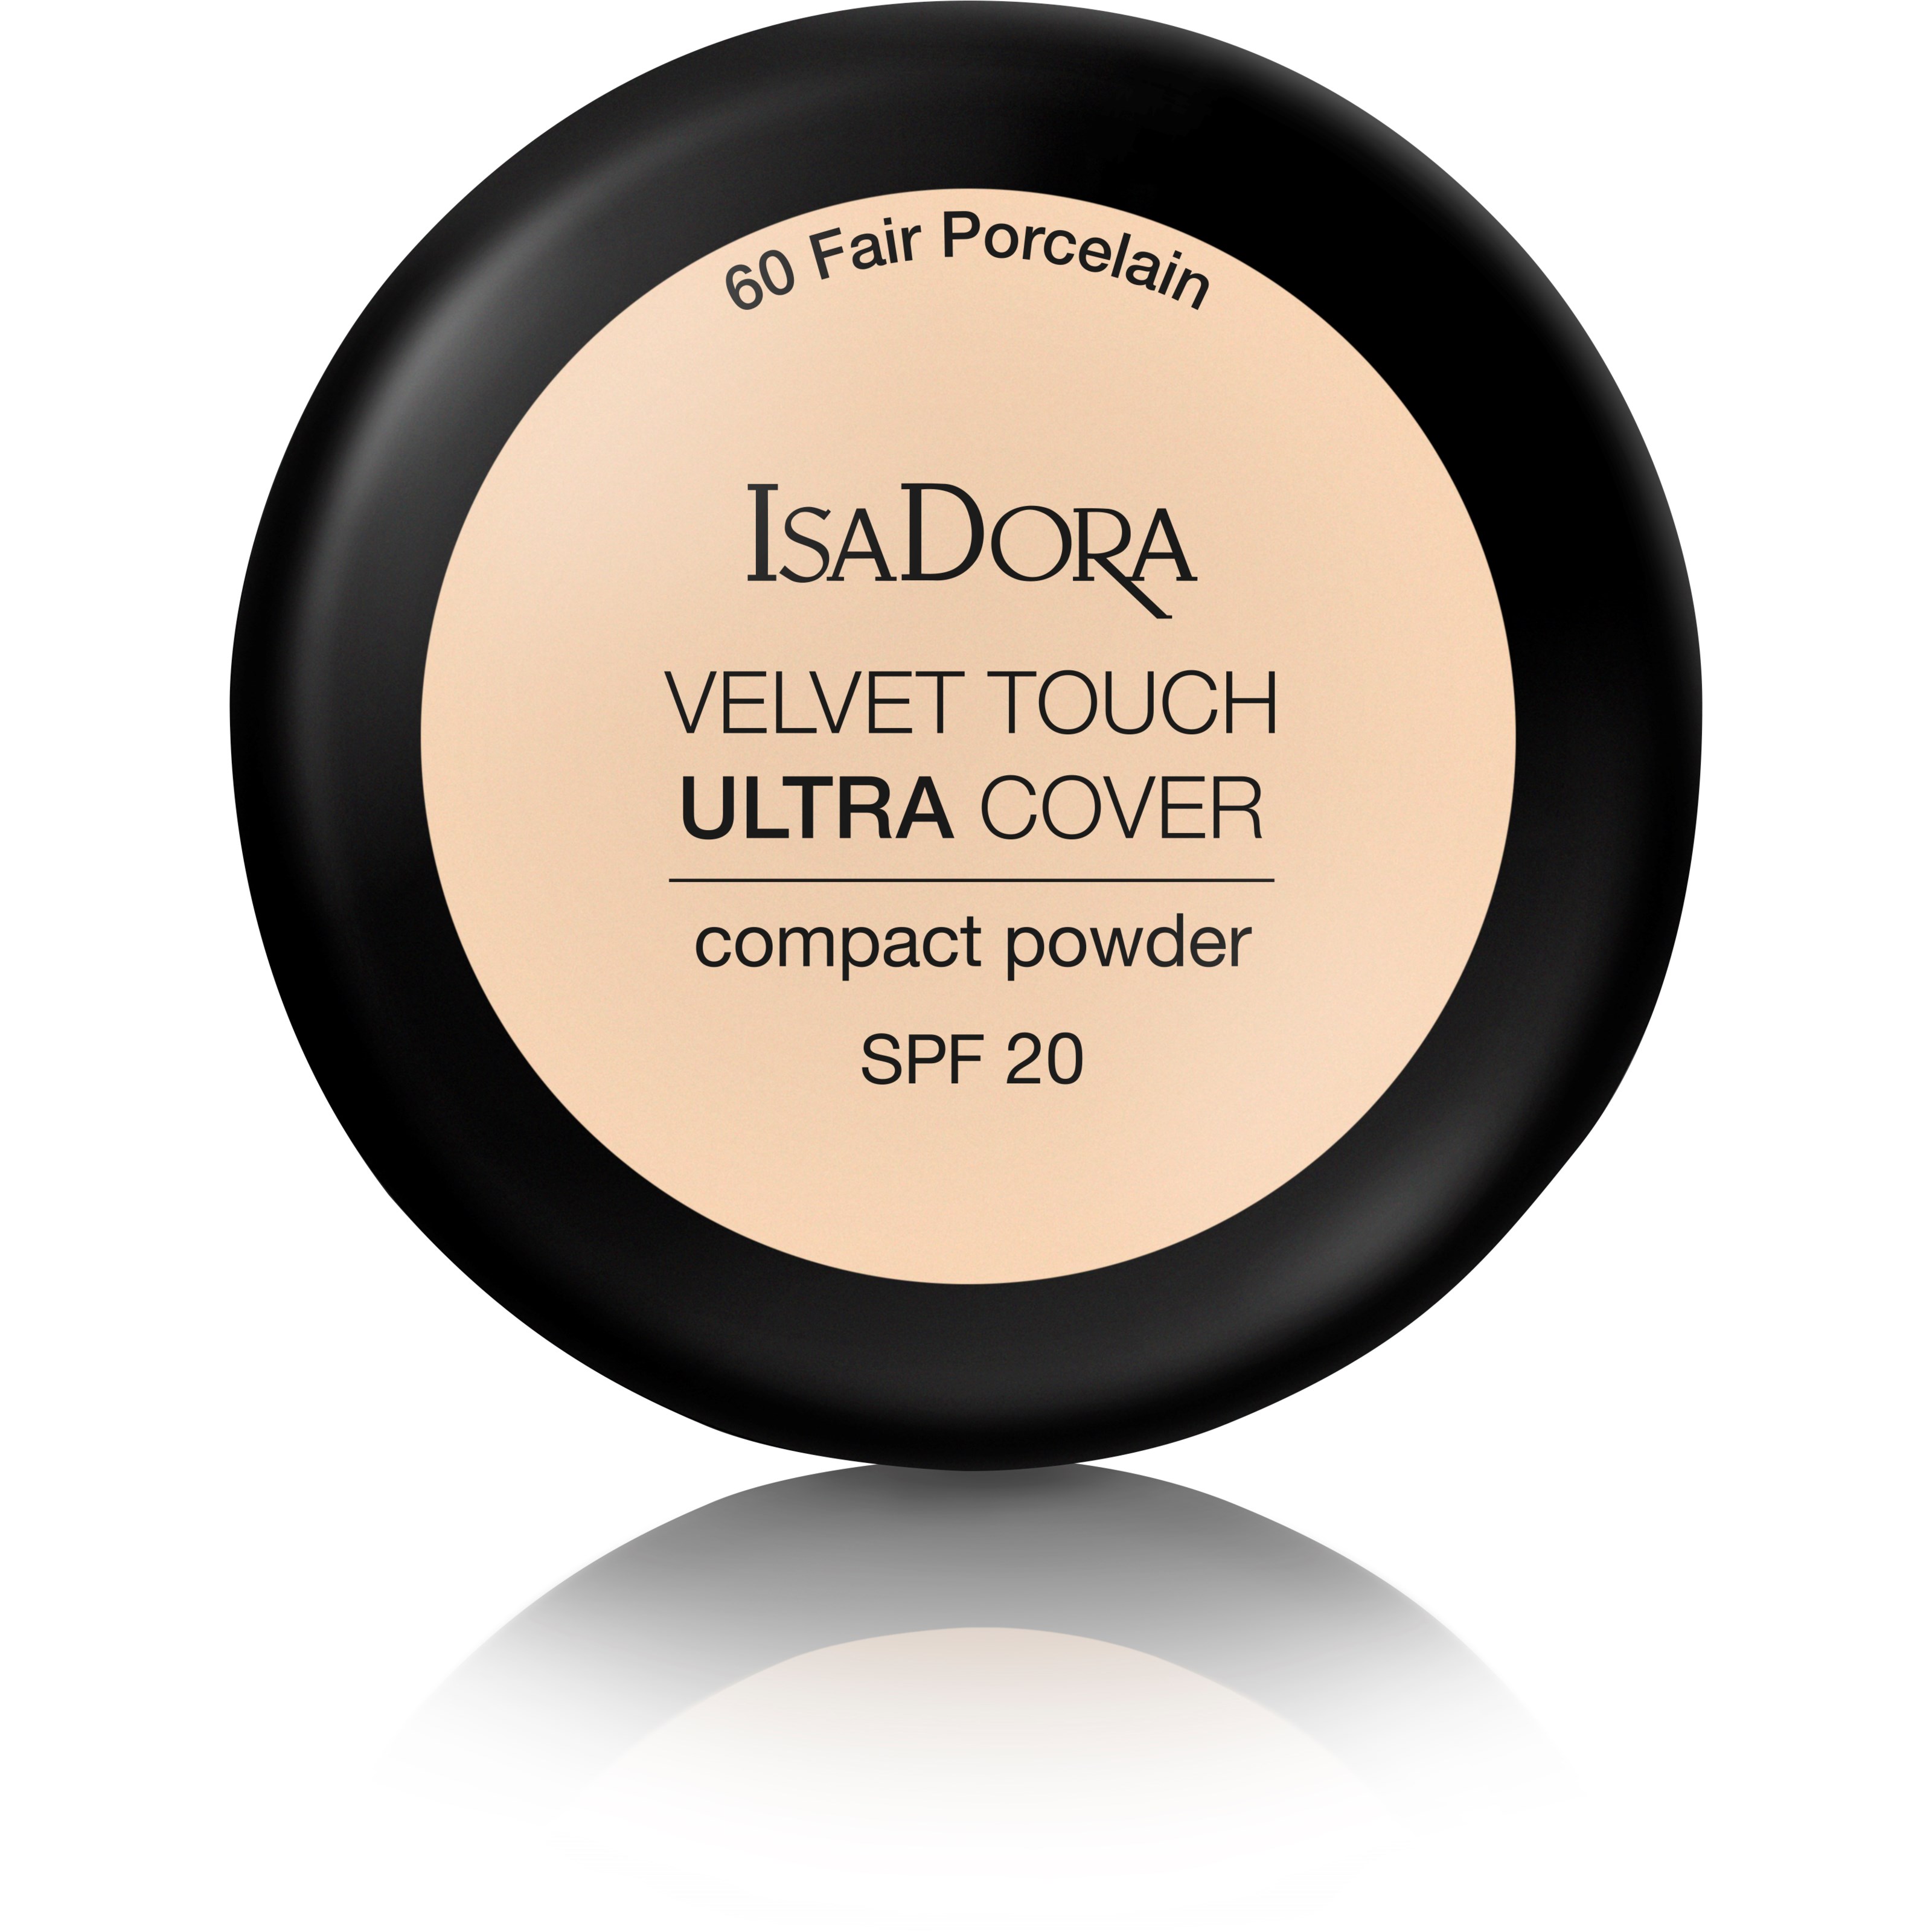 Läs mer om IsaDora Velvet Touch Ultra Cover Compact Power Spf 20 60 Fair Porcela